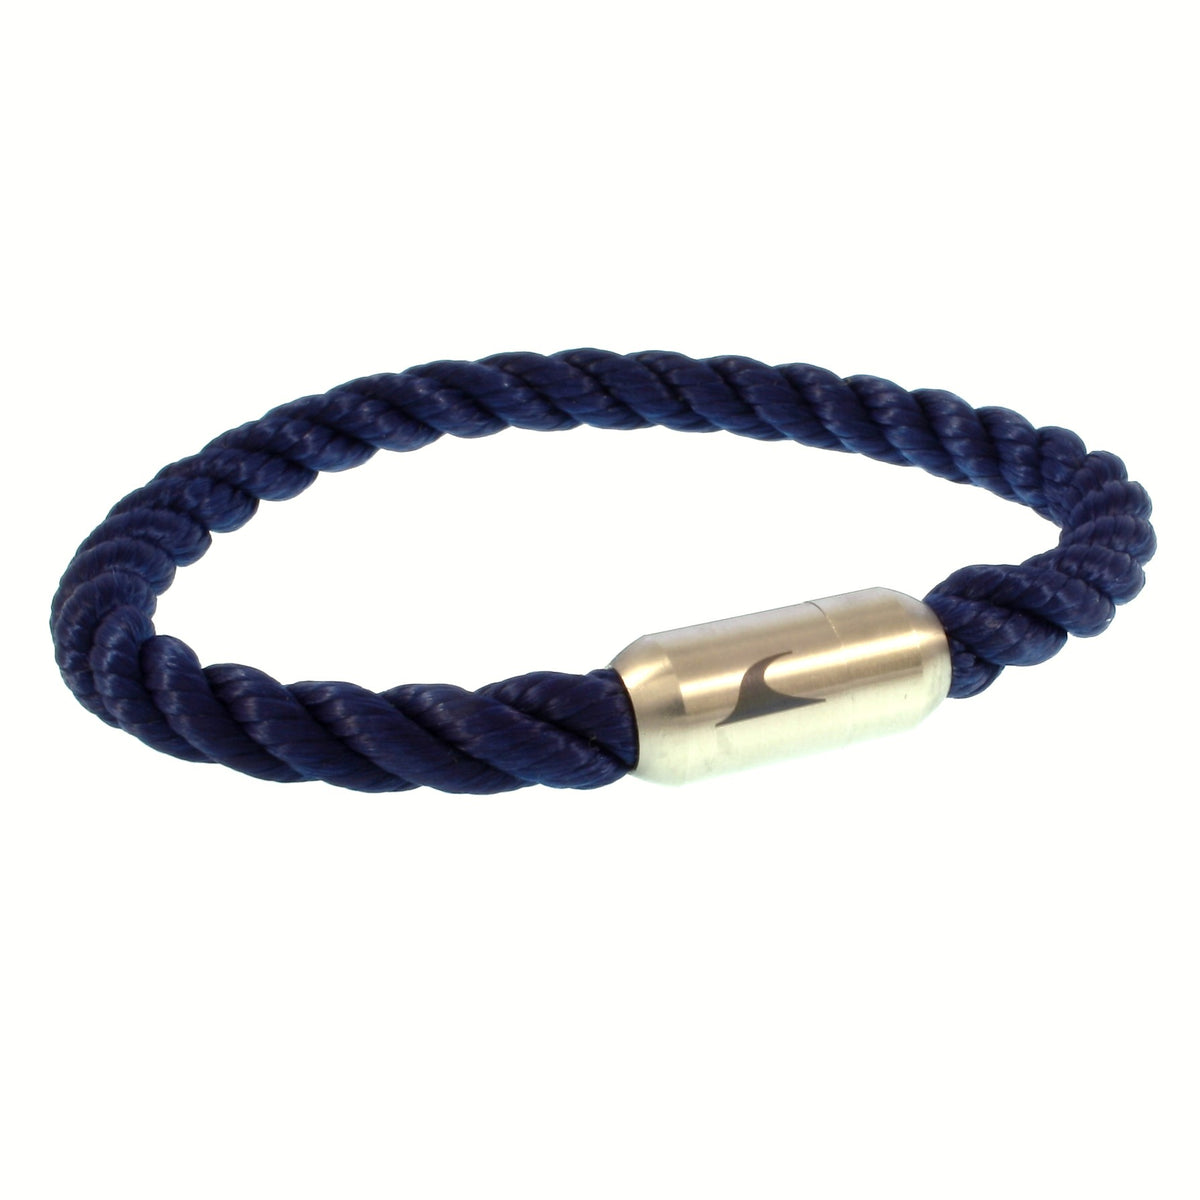 Herren-segeltau-armband-damen-sylt-blau-silber-kordel-Edelstahlverschluss-vorn-wavepirate-shop-k